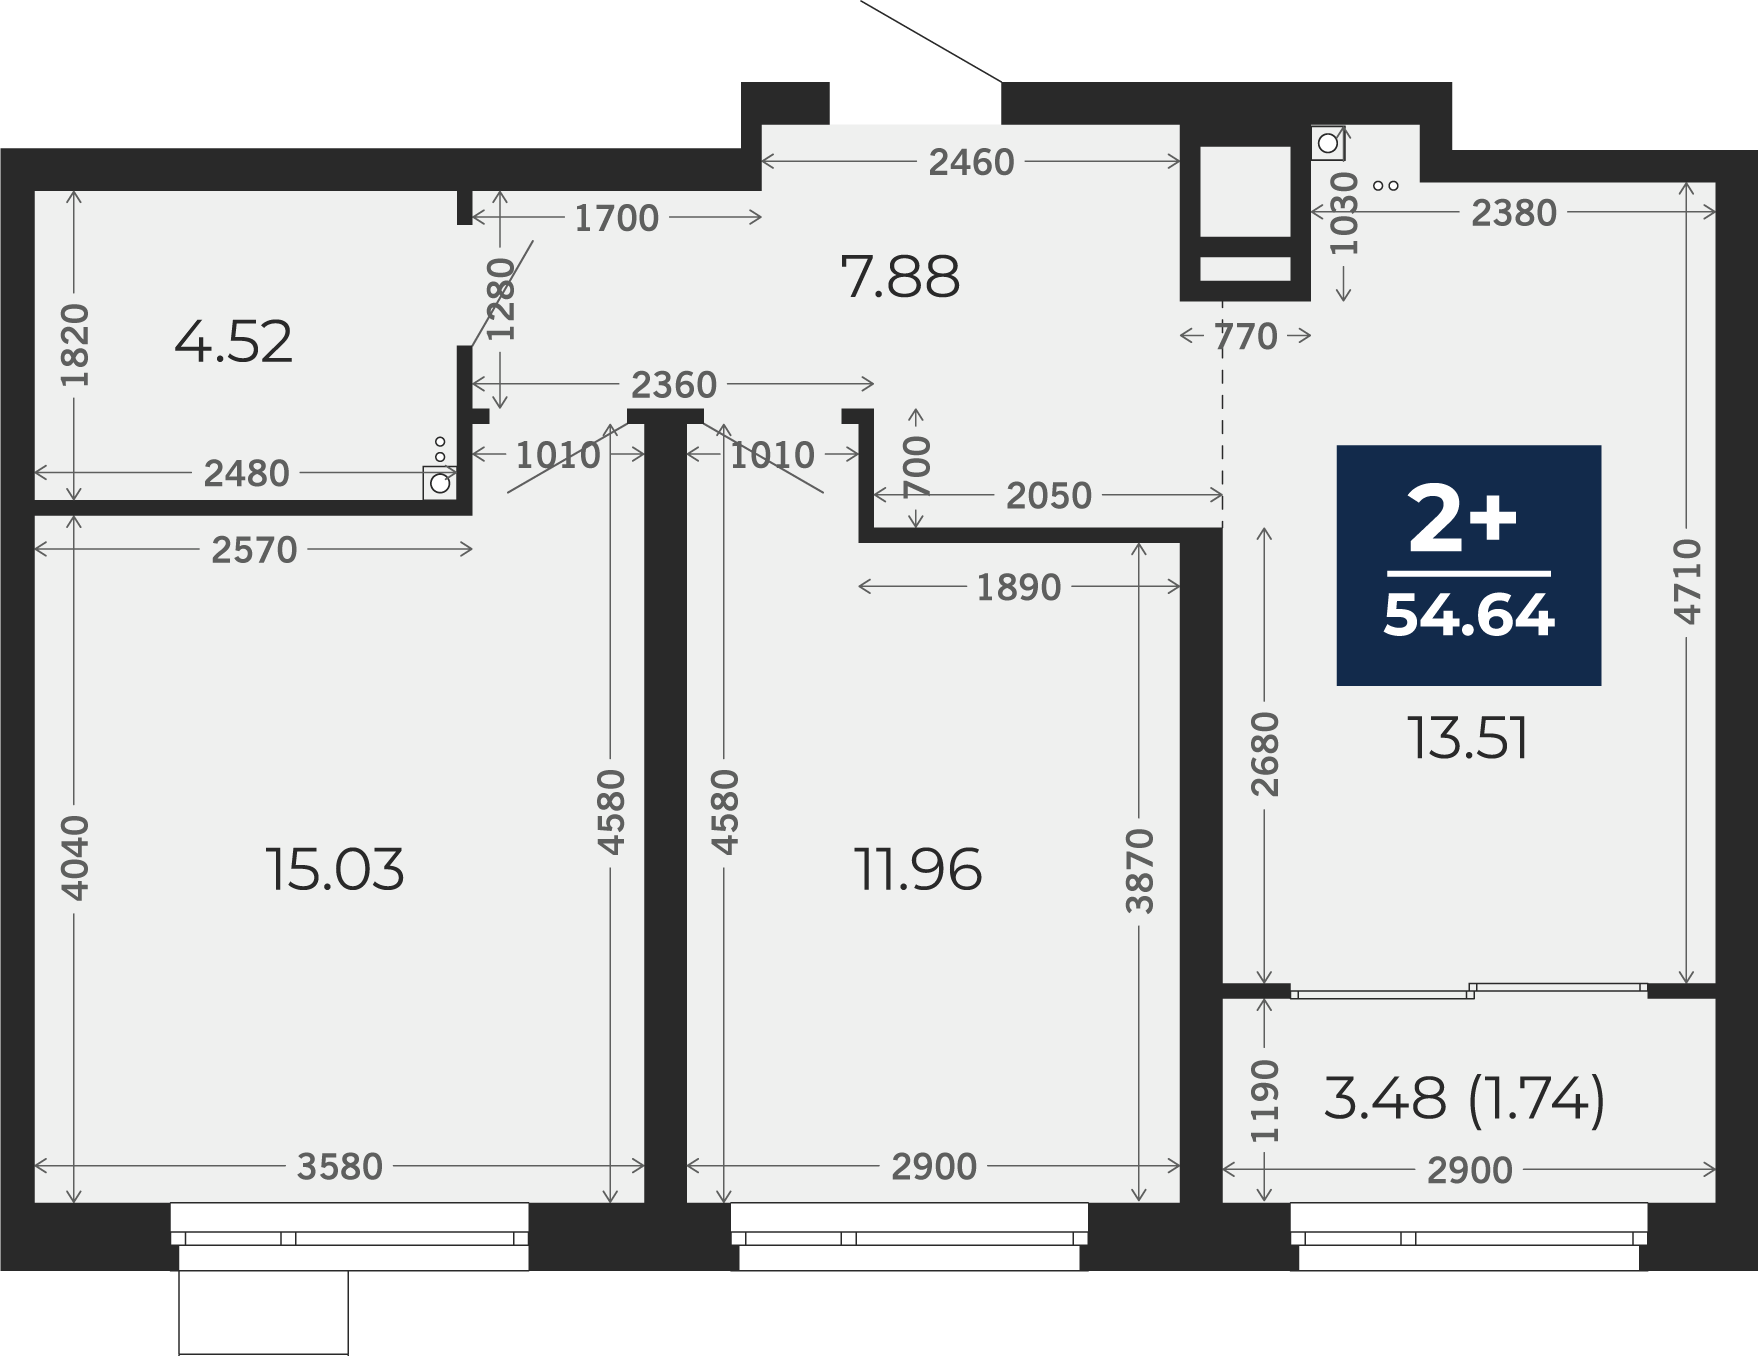 Квартира № 237, 2-комнатная, 54.64 кв. м, 13 этаж